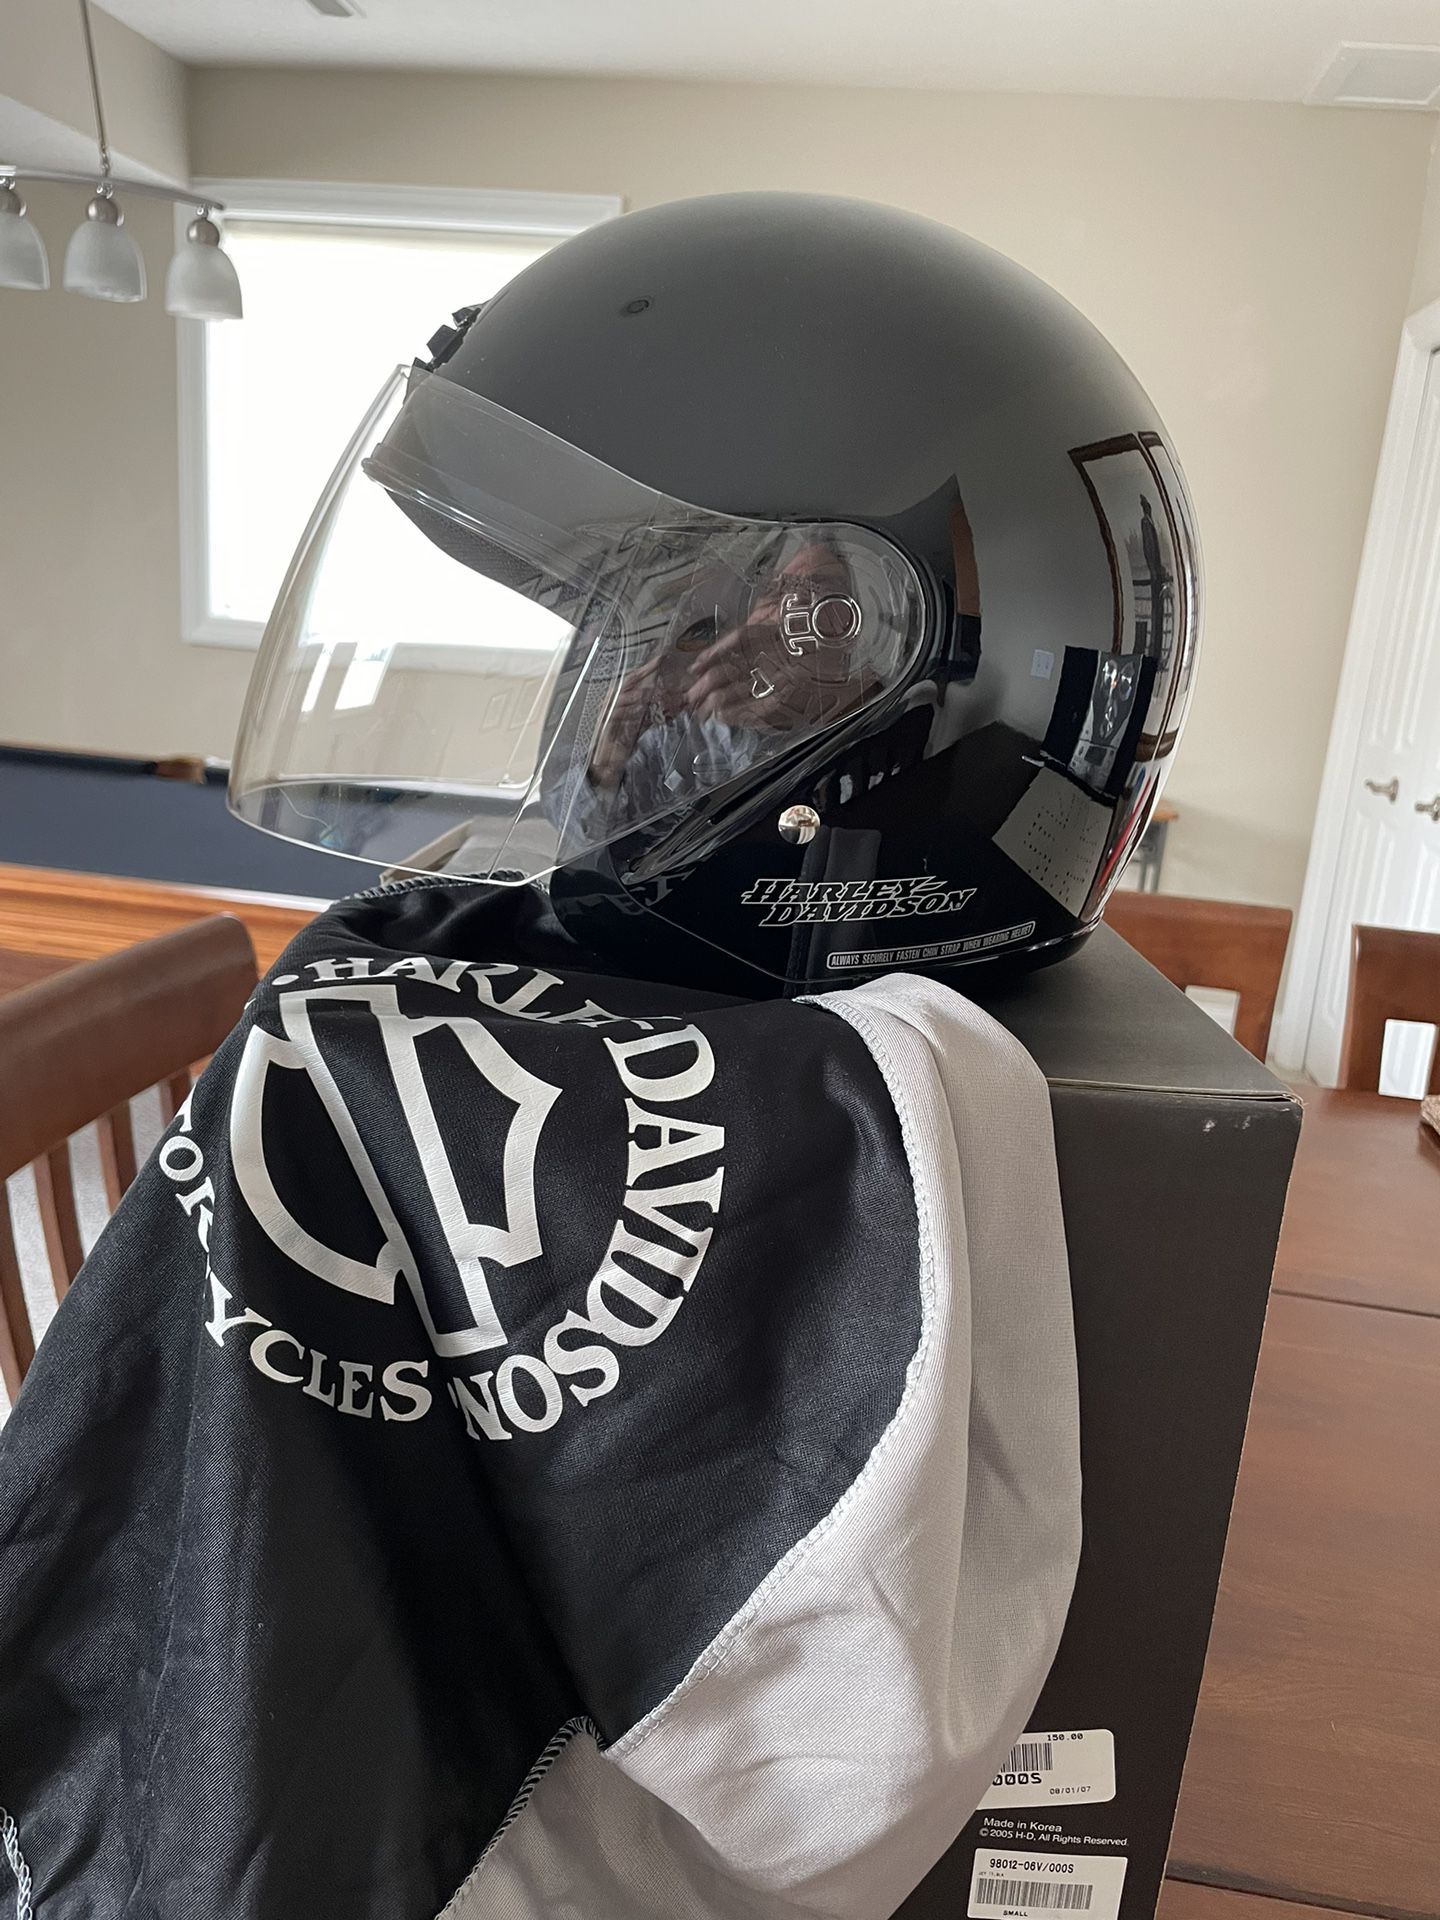 Motor Cycle Helmet “Harley Davidson”